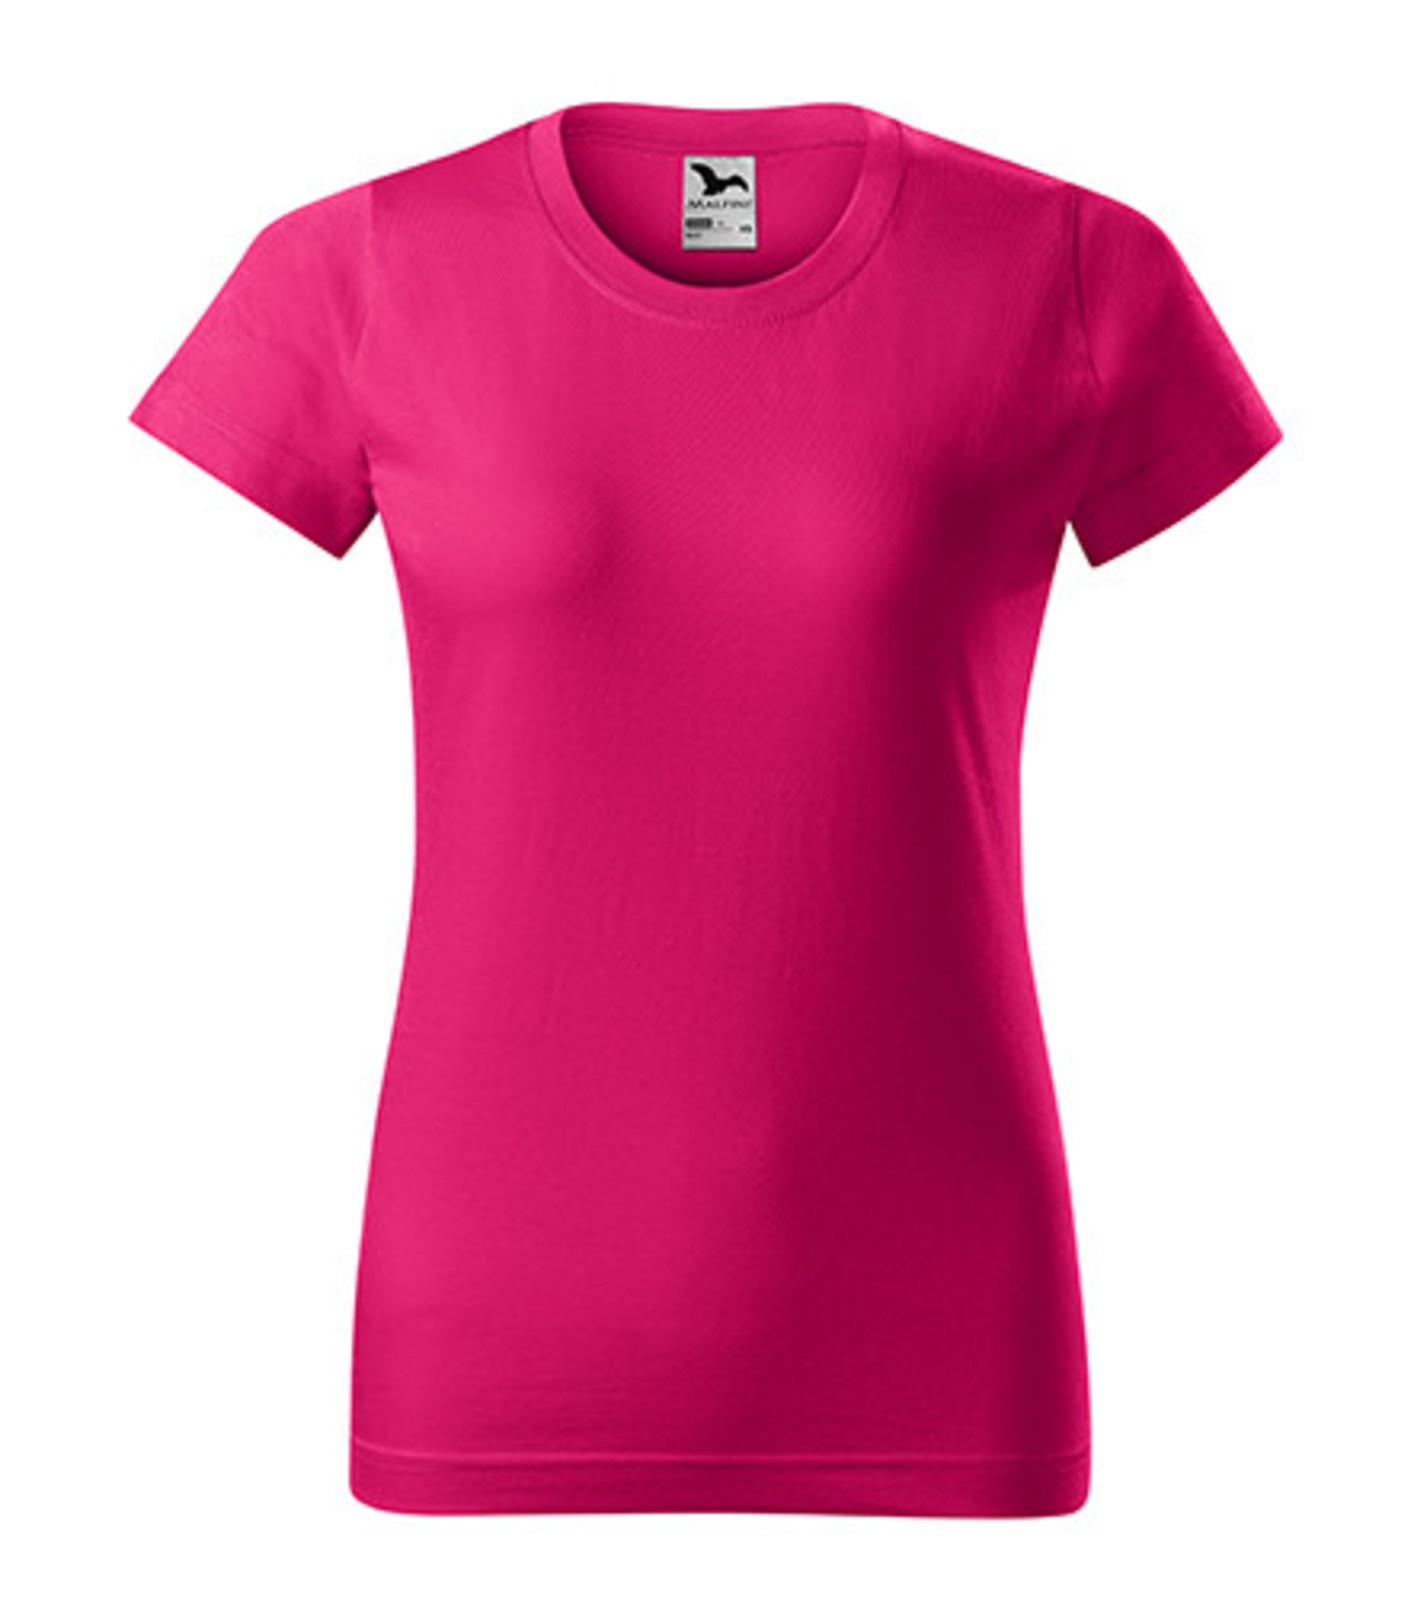 Dámske tričko Malfini Basic 134 - veľkosť: XL, farba: malinová